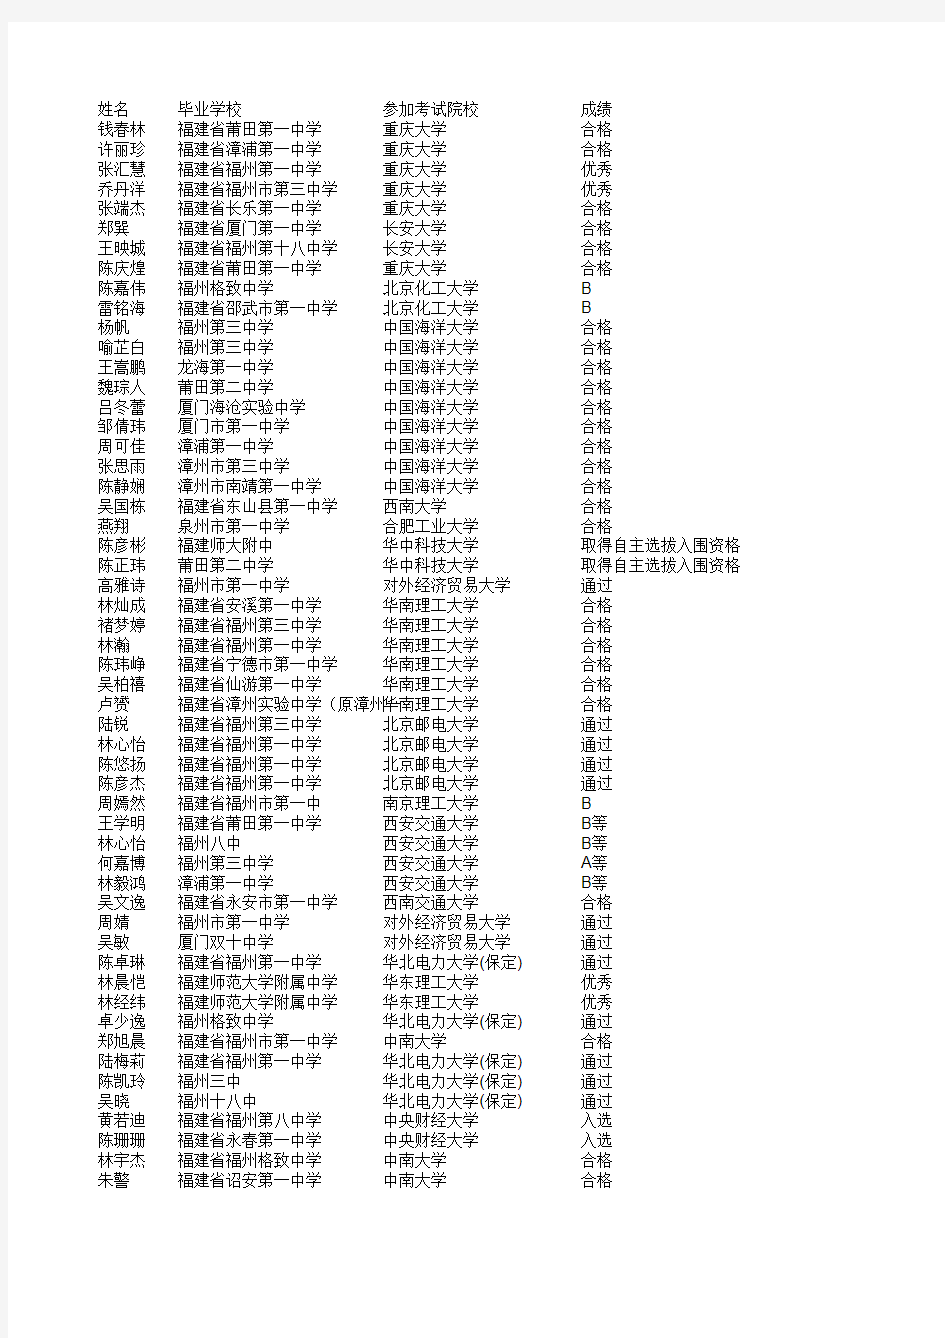 2011年福建省参加自主招生考试合格名单公示